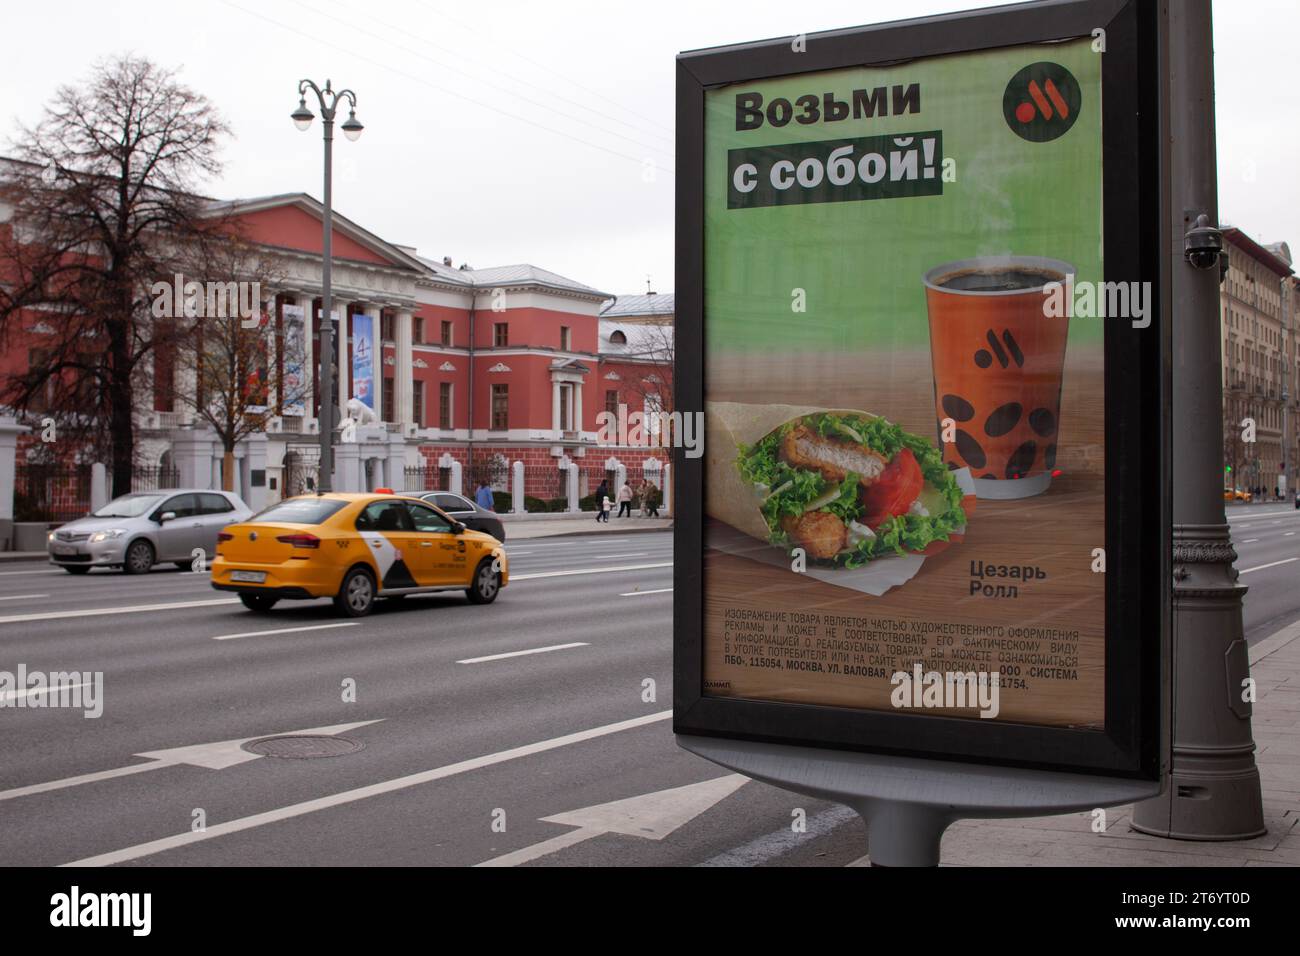 Werbeplakat der Fastfood-Kette Vkusno i im Museum für Zeitgeschichte Russlands, Twerskaja-Straße, Moskau, Russland Stockfoto